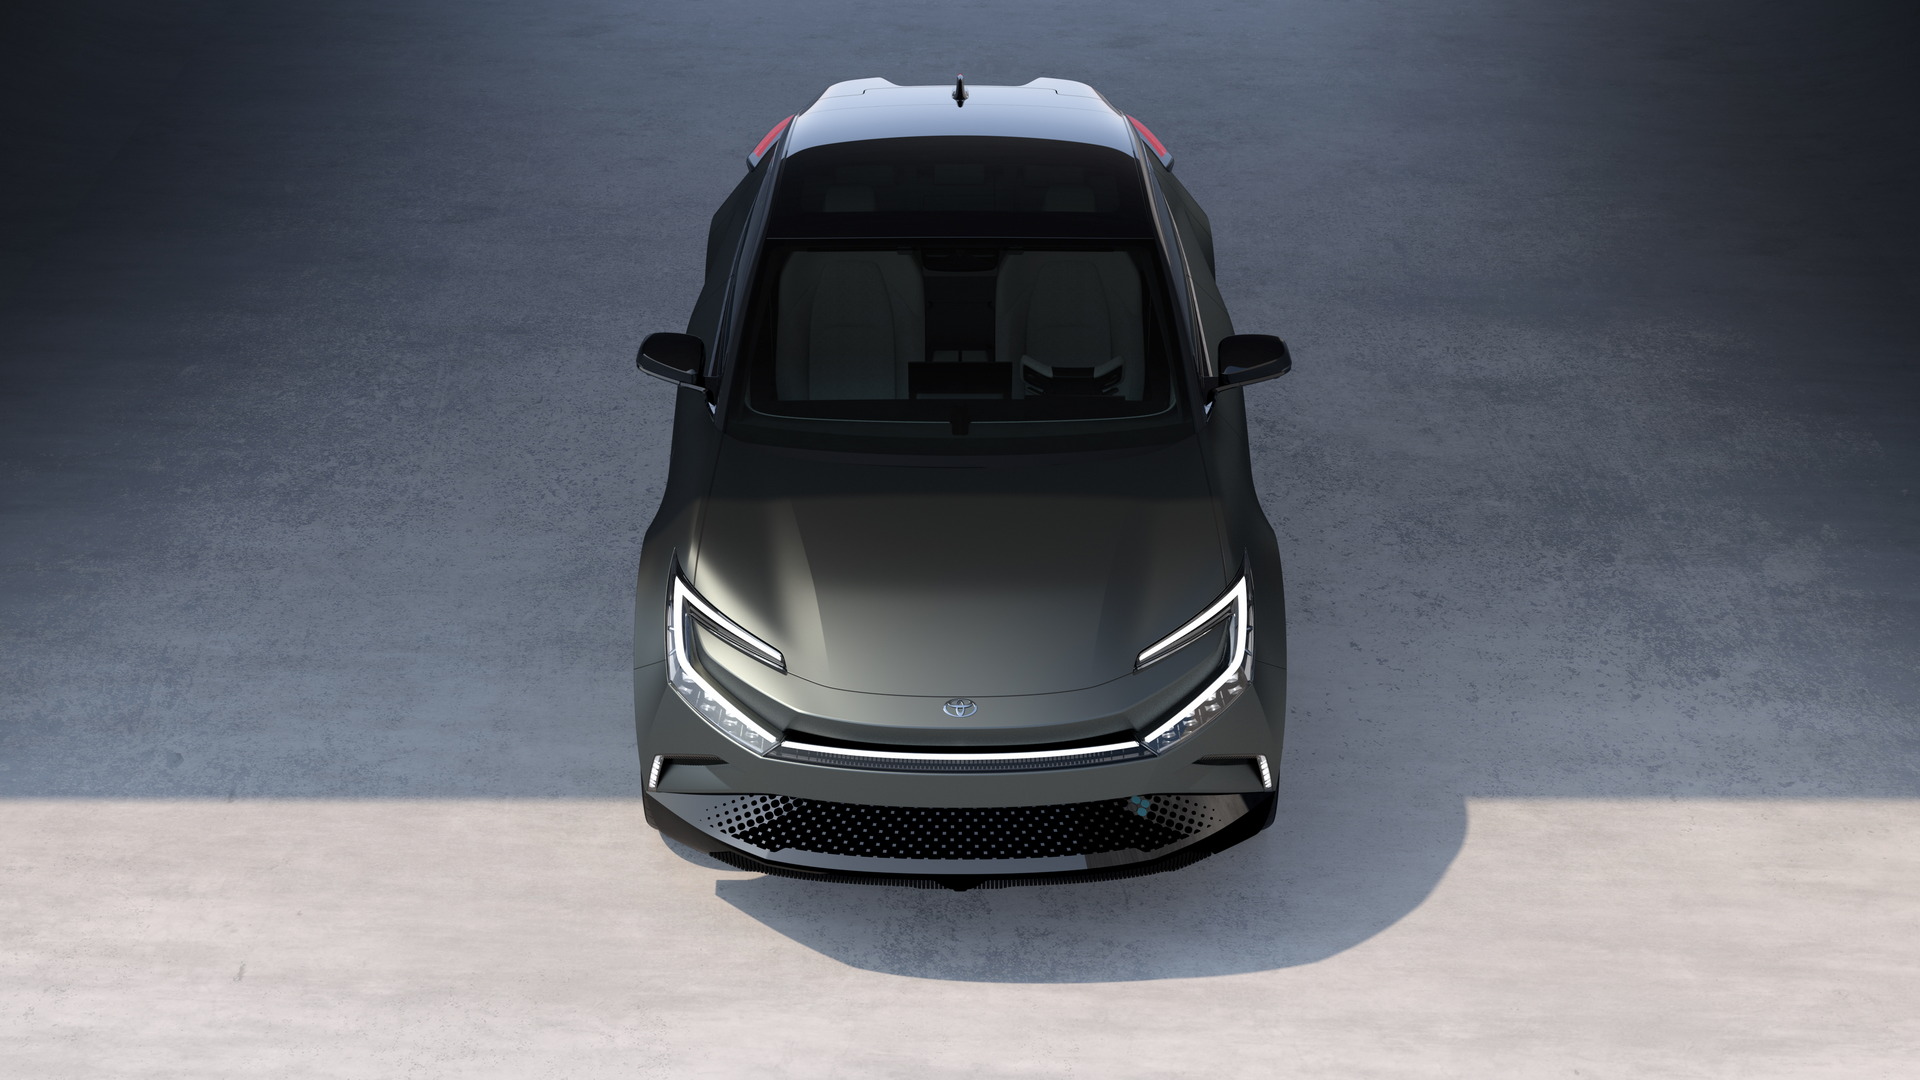 تدشين تويوتا bZ كومباكت SUV الكهربائية الجديدة كلياً بتصميم انسيابي وداخلية عصرية 2